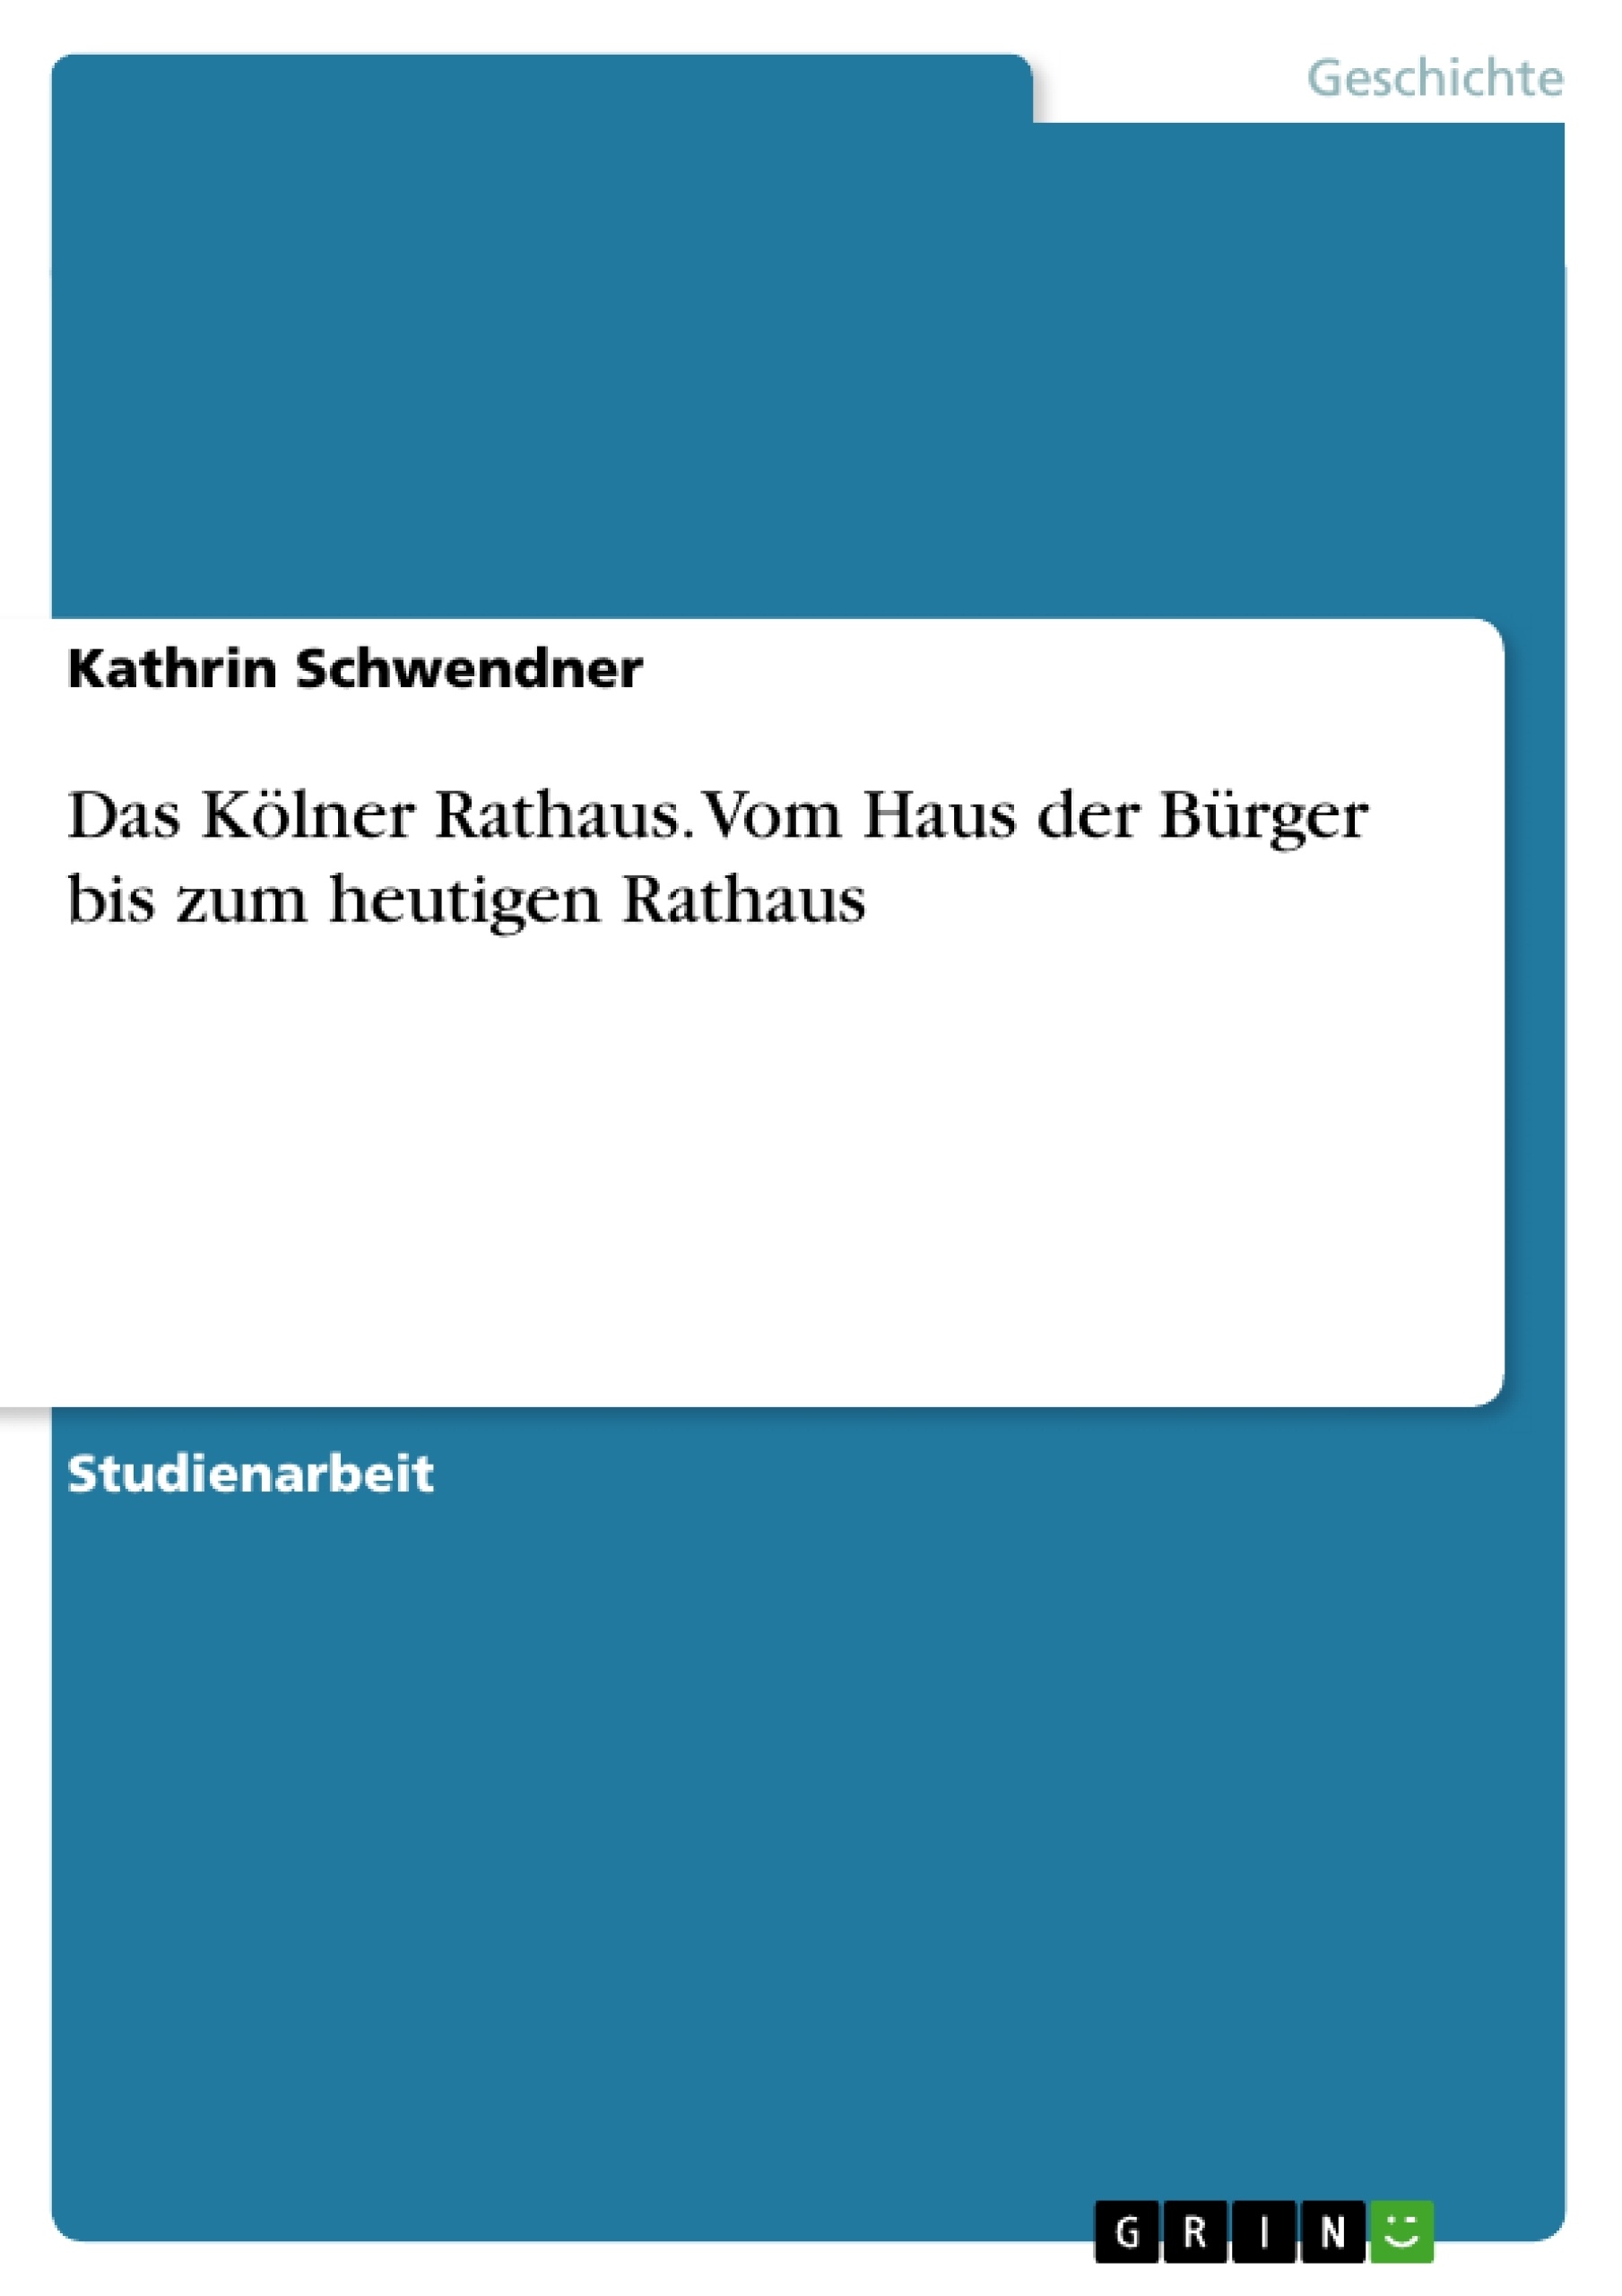 Título: Das Kölner Rathaus. Vom Haus der Bürger bis zum heutigen Rathaus